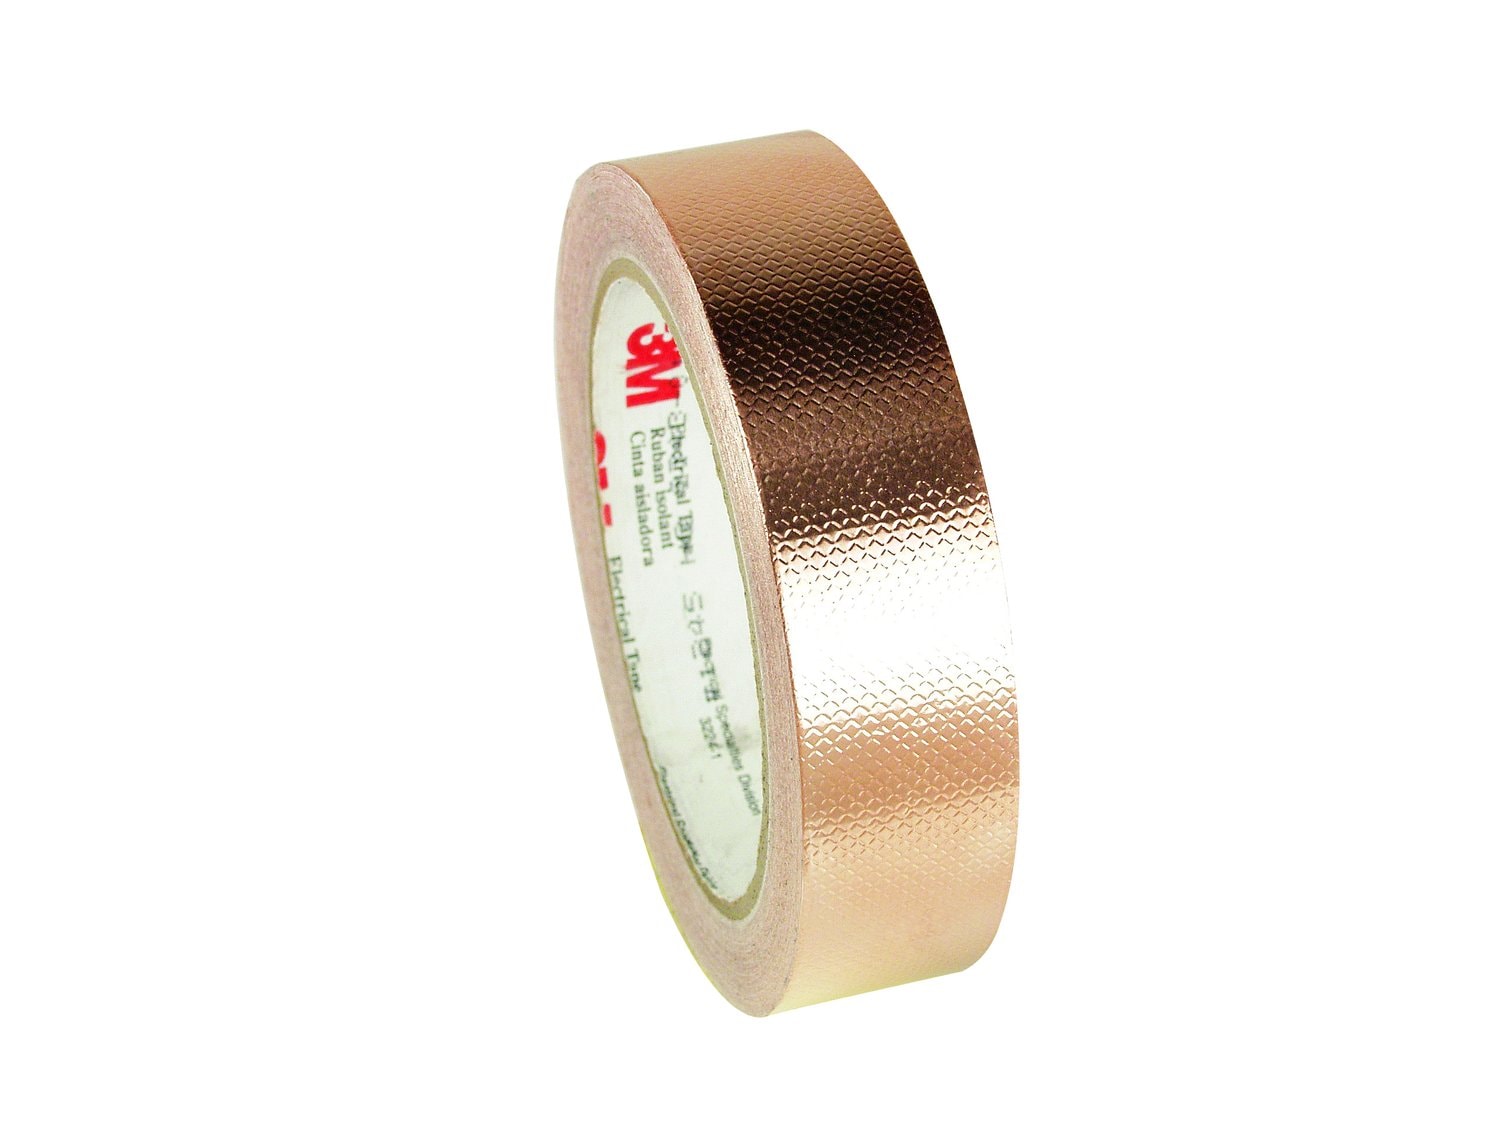 7010350291 - 3M Embossed Copper Foil EMI Shielding Tape 1245, 3/8 in x 18 yd, 3 in
Paper Core, 24 Rolls/Case